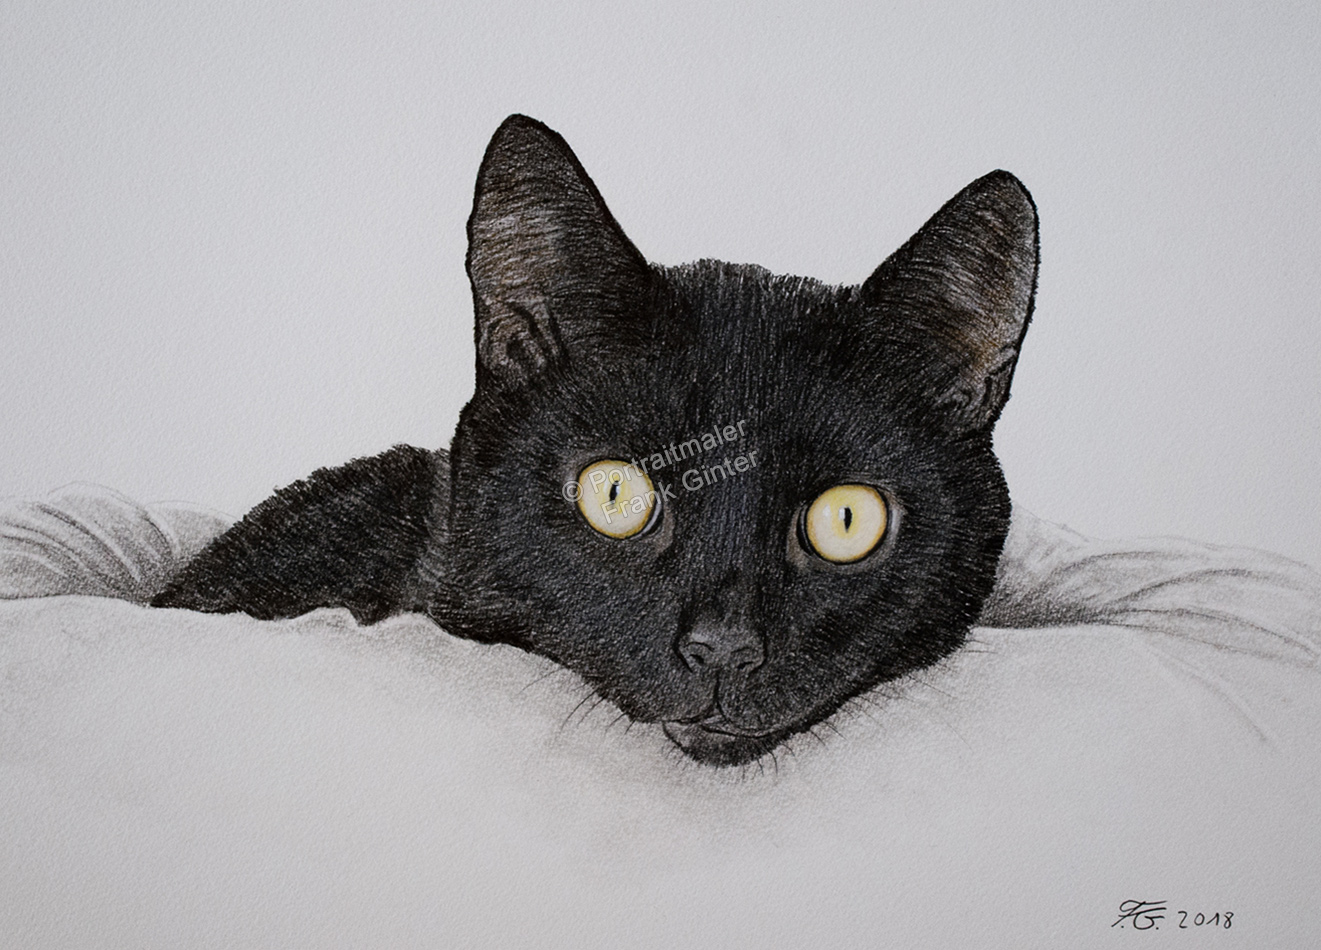 Farbstiftzeichnung eines Katzenportraits, Katze mit Farbstift fotorealistisch gezeichnet